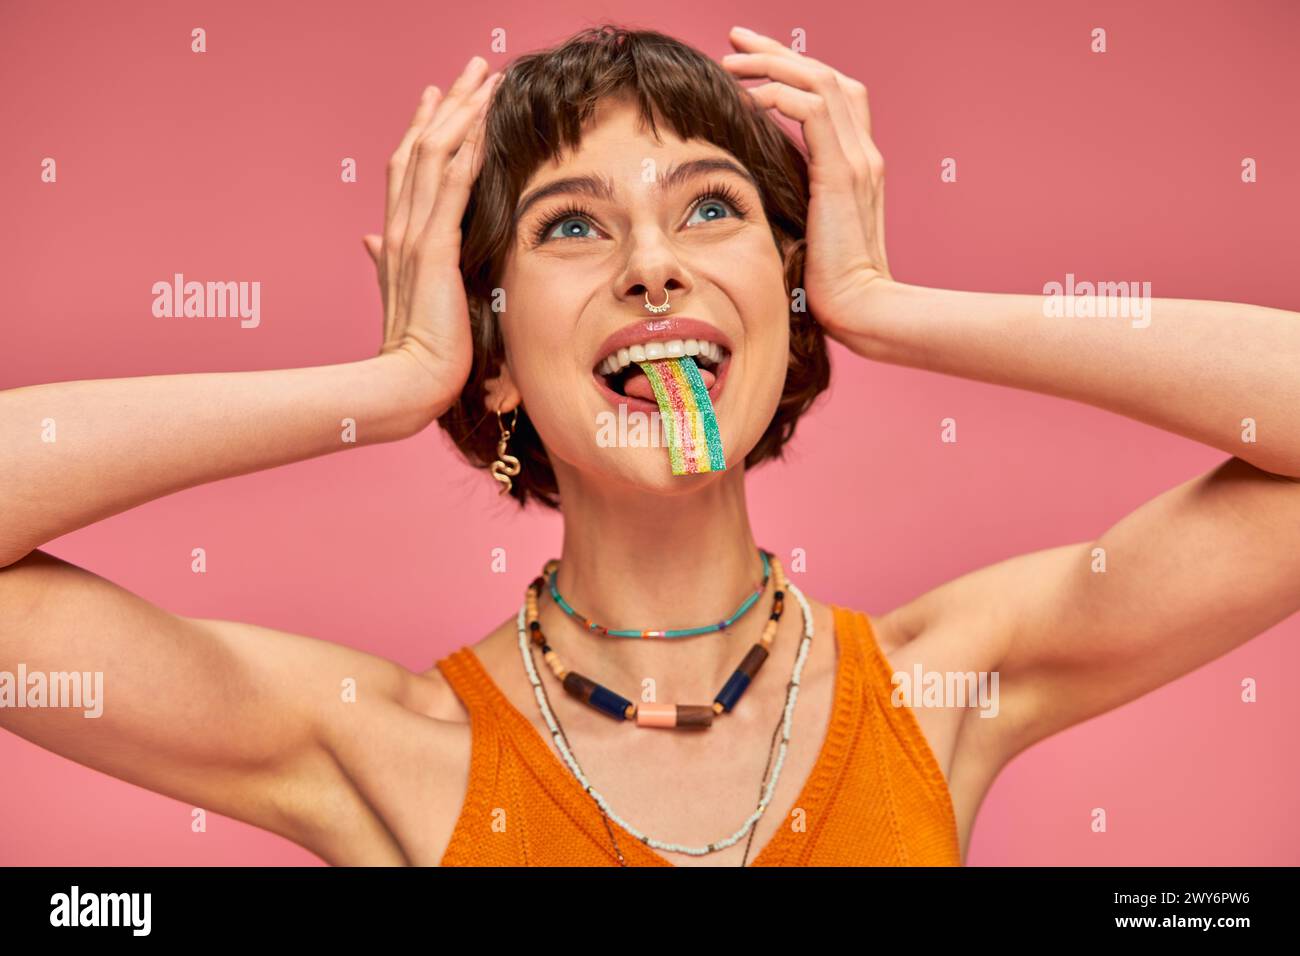 giovane donna felice che assaggia una striscia di caramelle dolci e acide sulla lingua, sfondo rosa Foto Stock